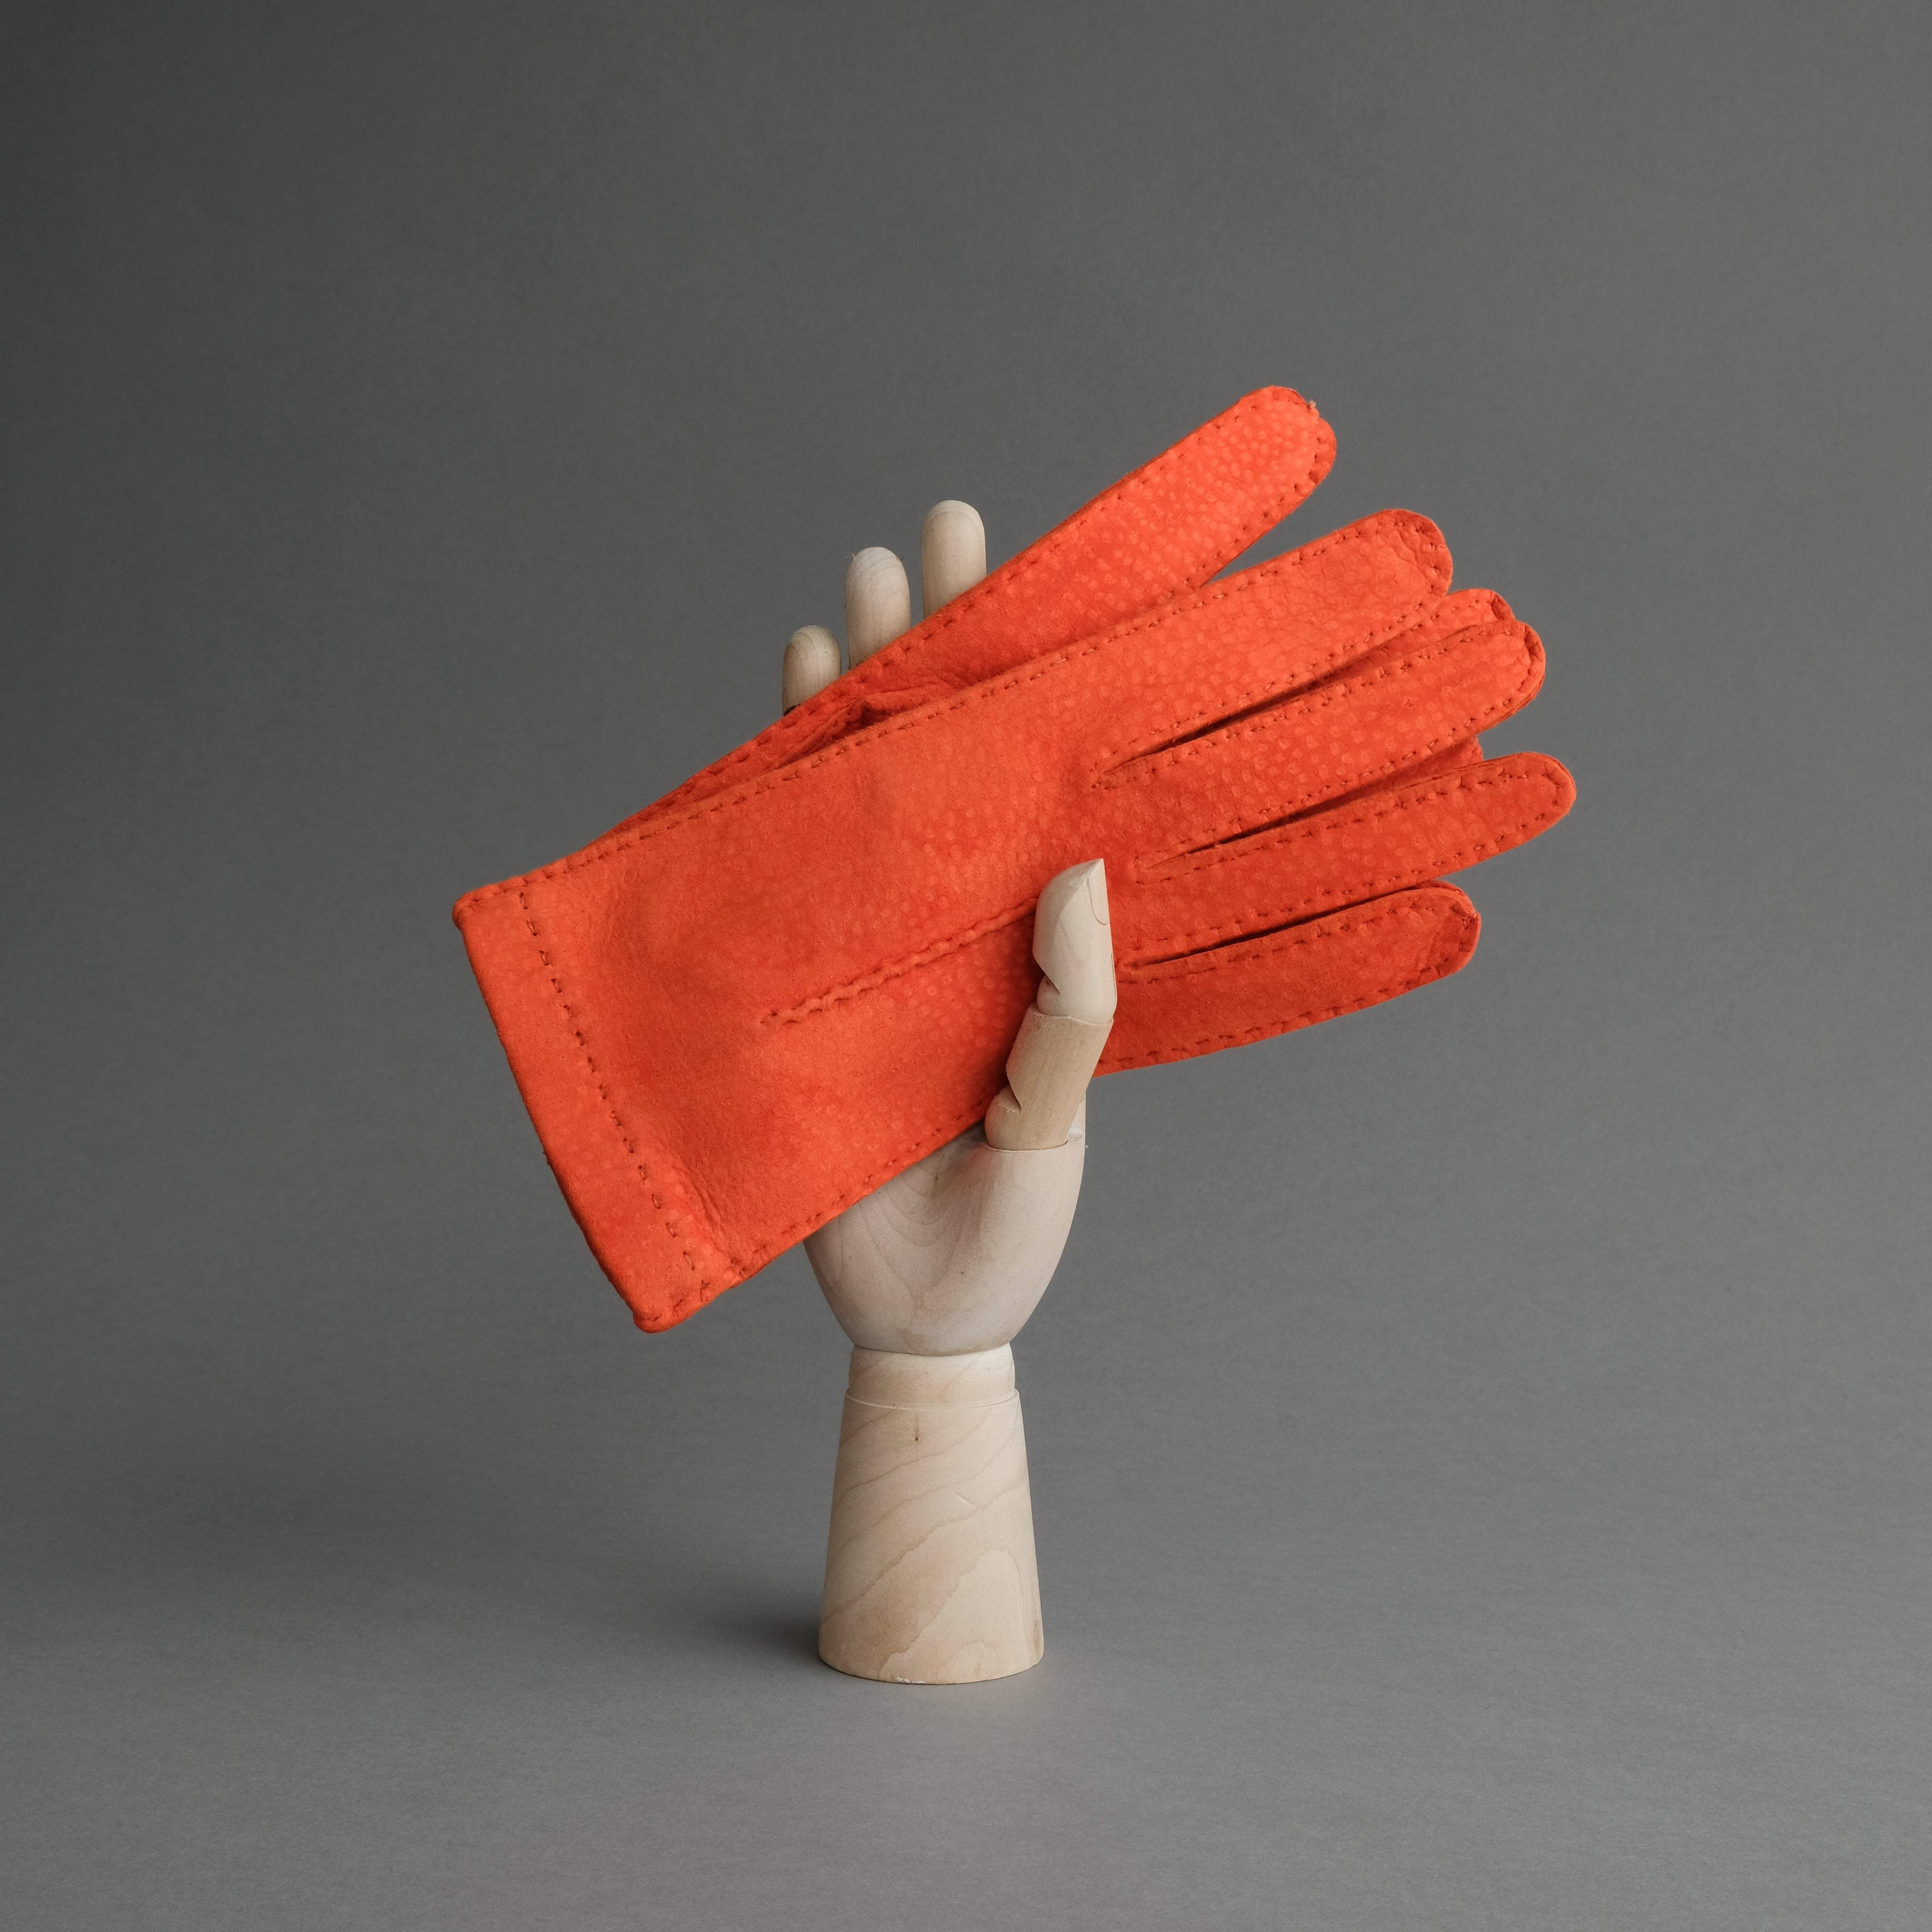 Ladies Dress Gloves from Orange Carpincho Leather - TR Handschuhe Wien - Thomas Riemer Handmade Gloves